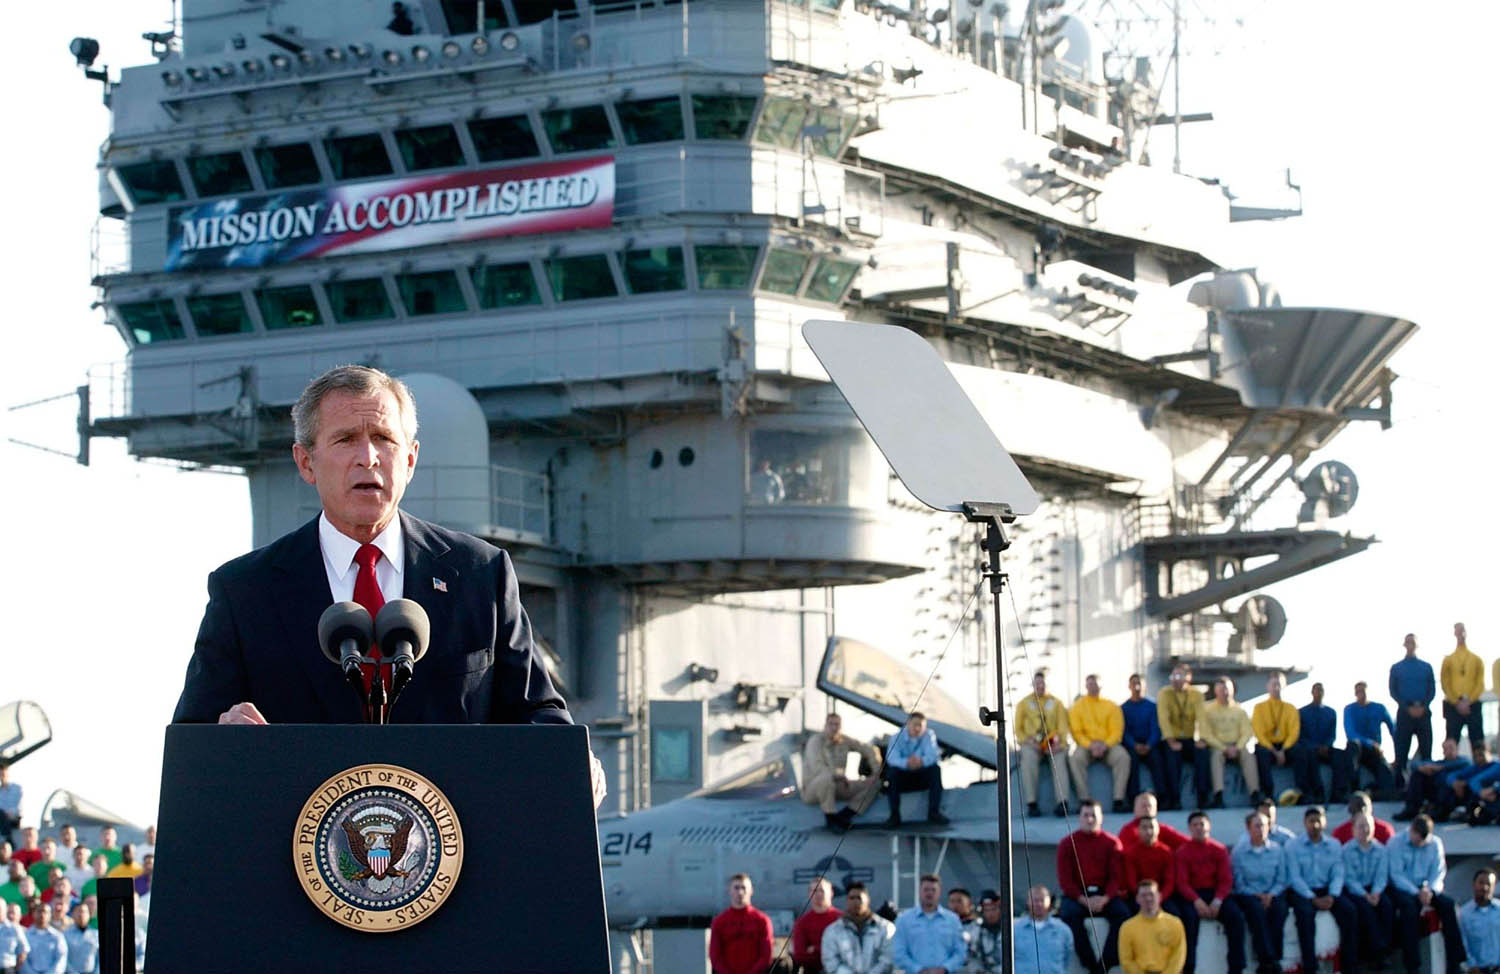 الرئيس الأميركي السابق جورج بوش على حاملة طائرات يحتفل بالنصر في العراق بالإعلان "المهمة تمت" (2003)